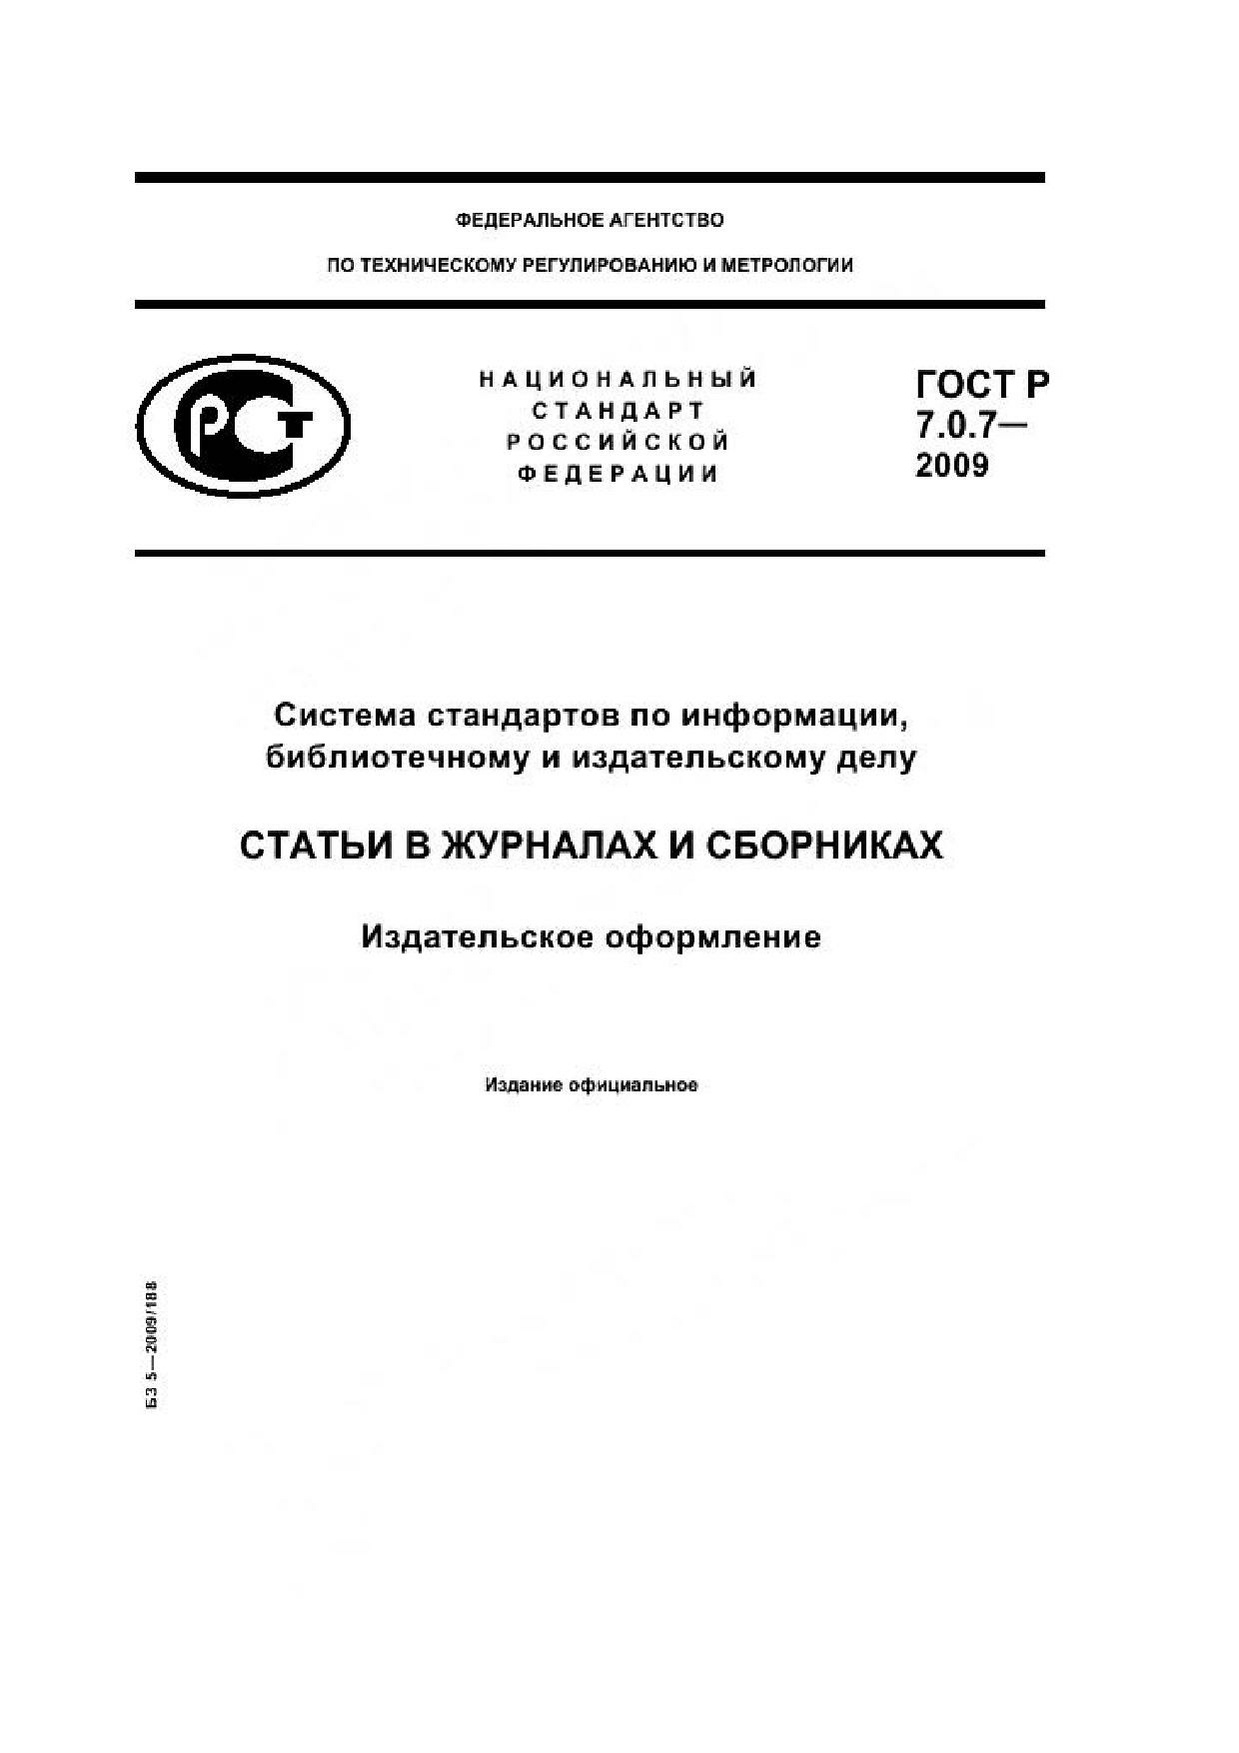 ГОСТ Р 7.0.7–2009.pdf